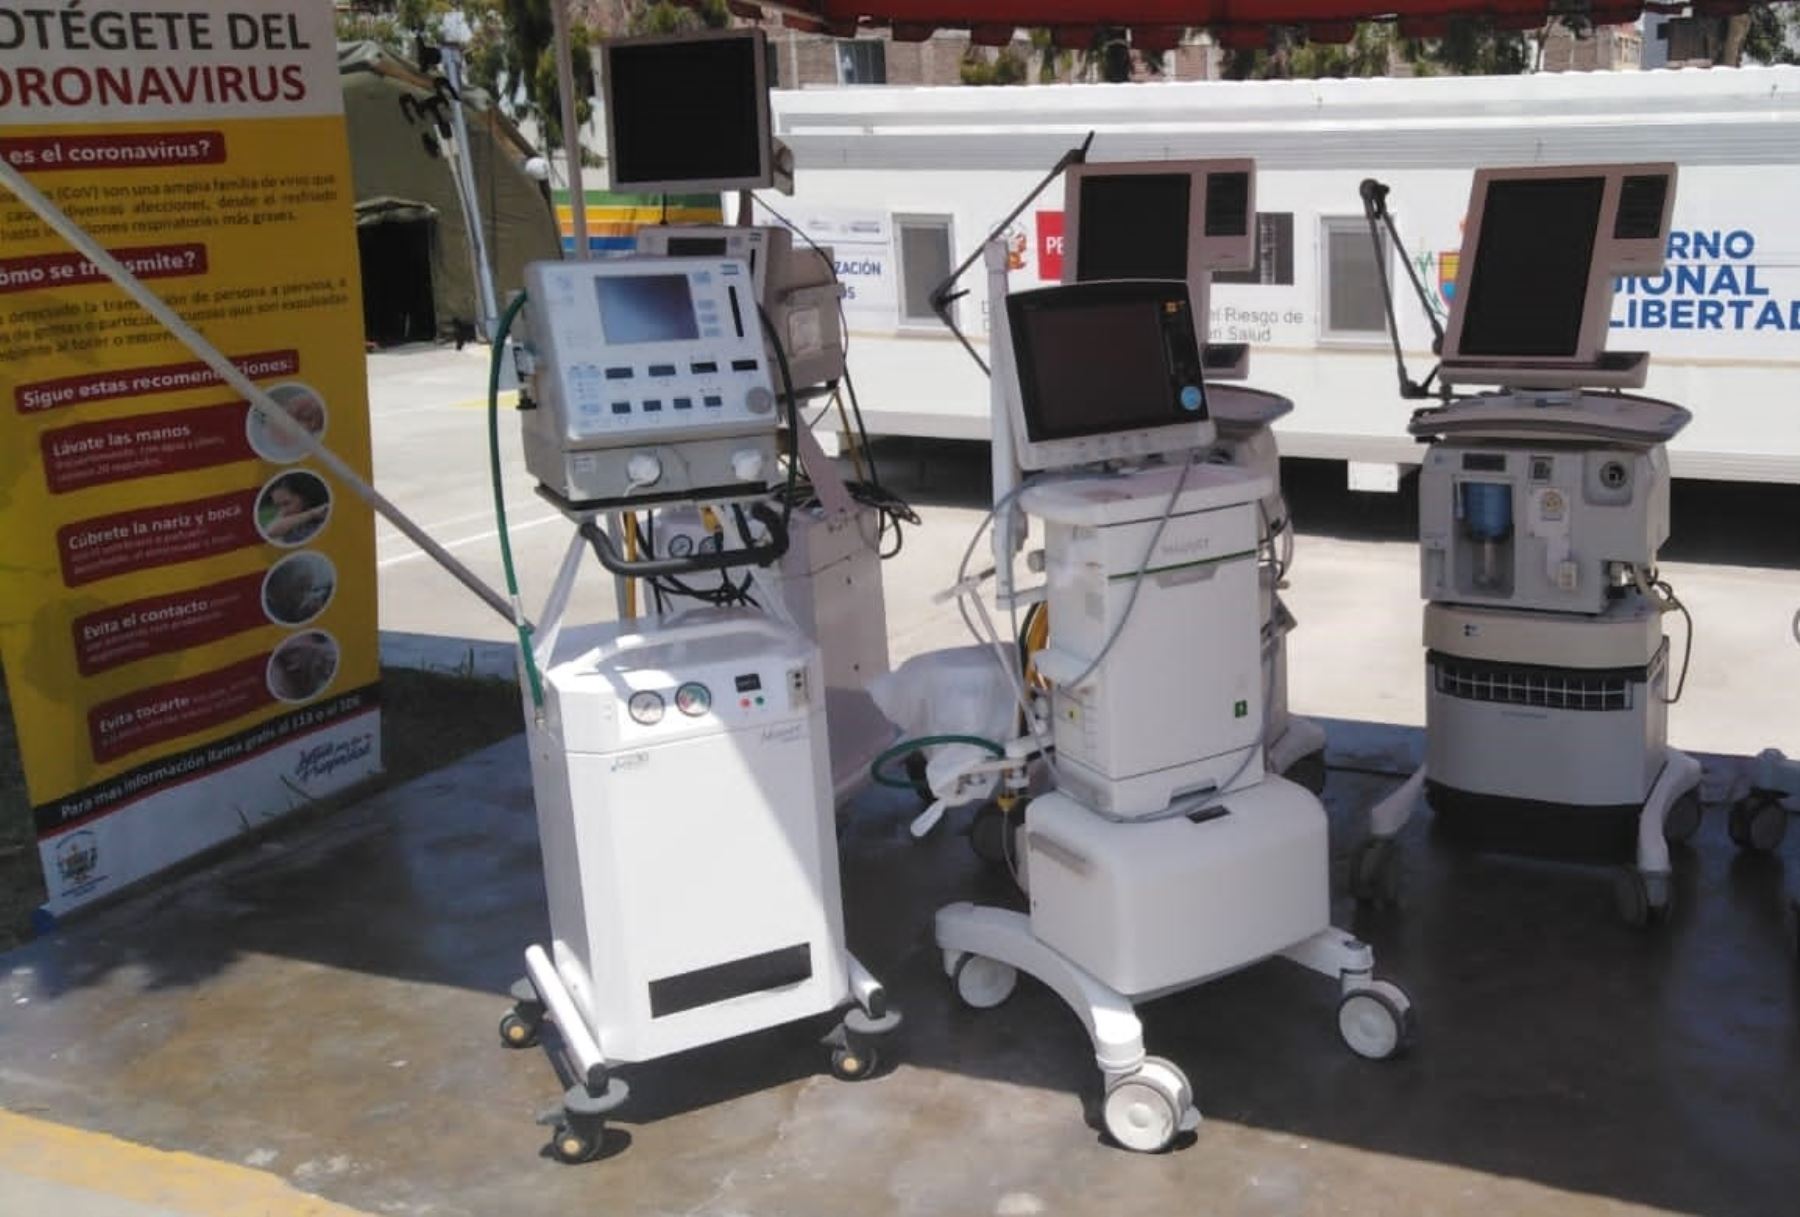 El Comando de Operaciones Regional Covid-19 La Libertad entregó 12 respiradores mecánicos para atención de pacientes en el Hospital Regional Docente de Trujillo.